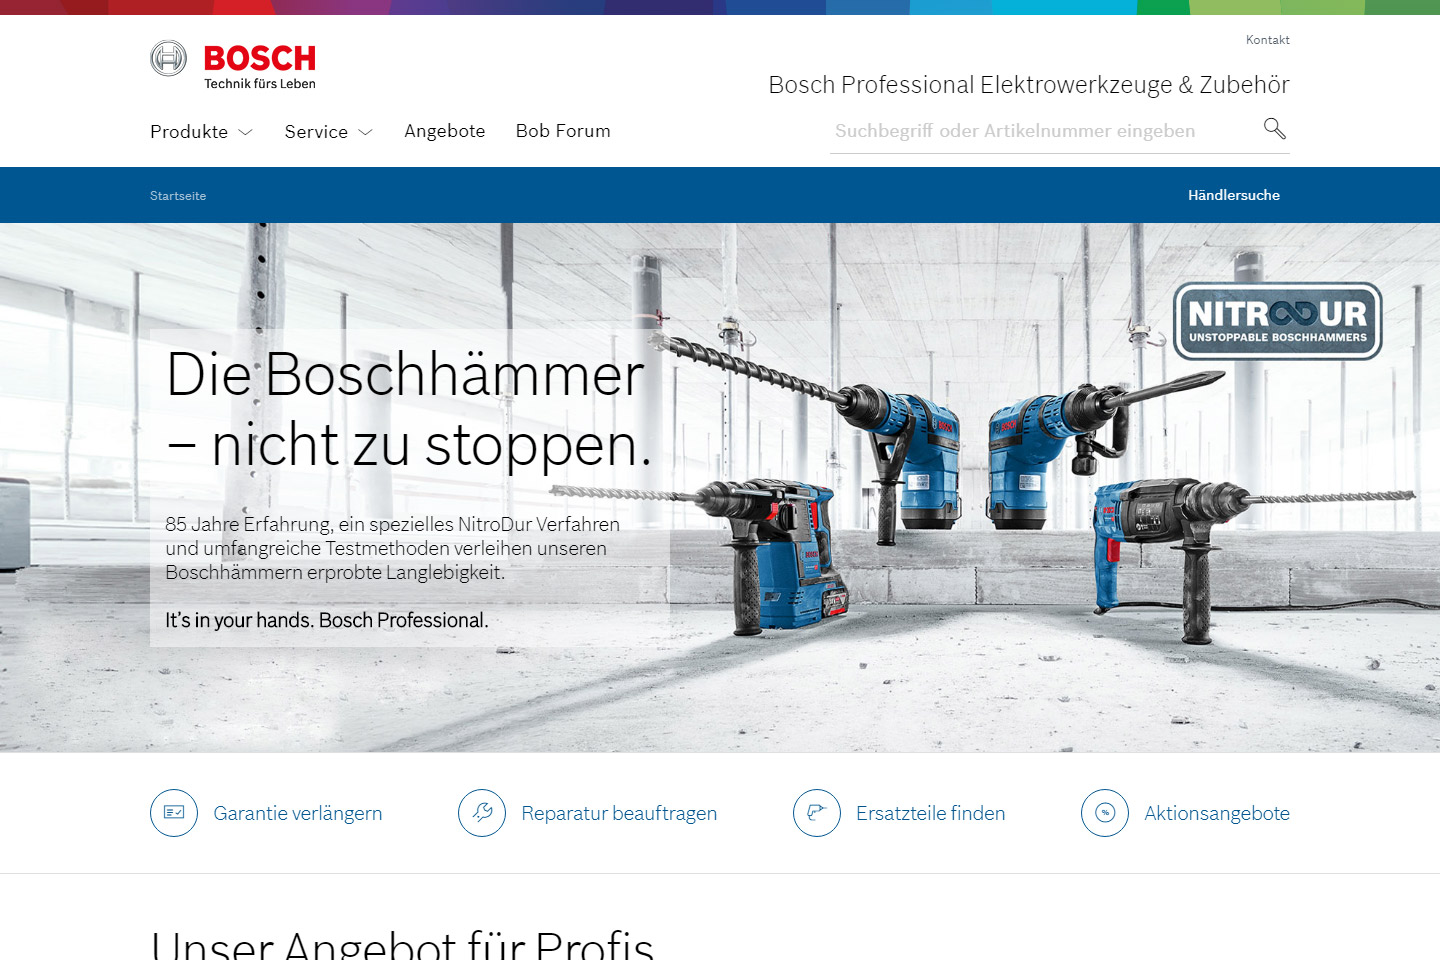 bosch pt bi website relaunch 2017 04 detail image 1